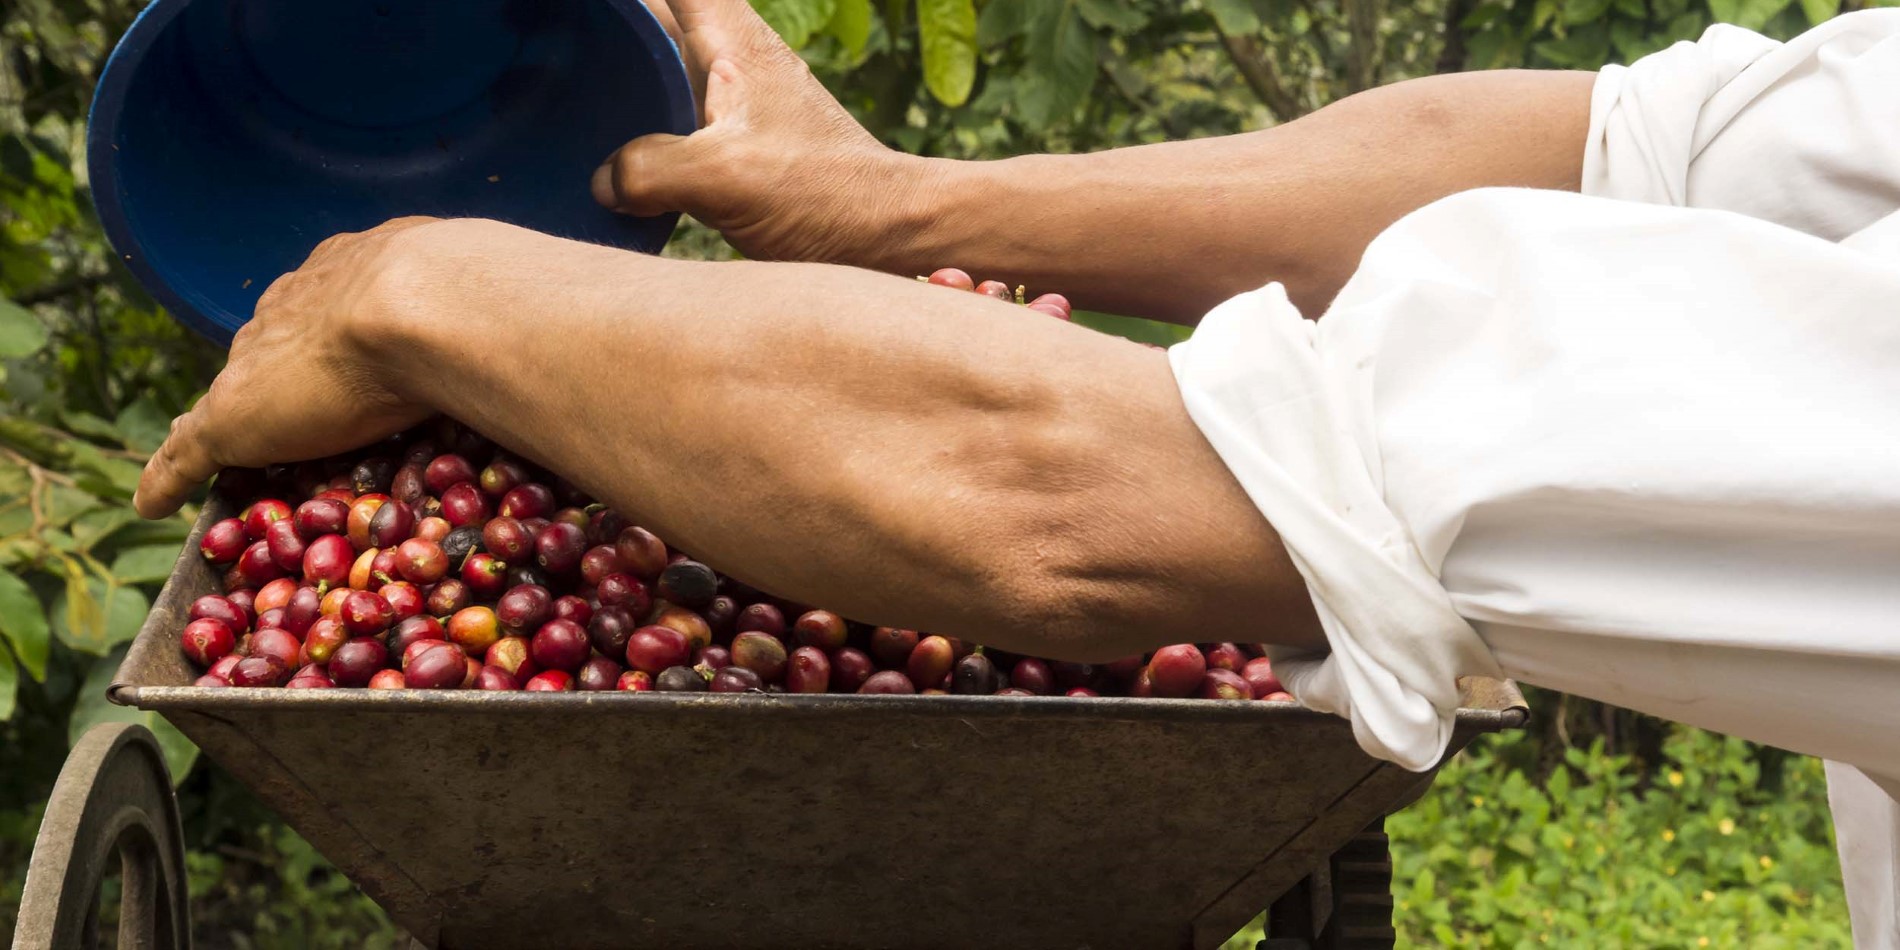 Följ med på en tur till en kaffeplantage och få veta hur dessa röda bär förvandlas till världens favoritdryck